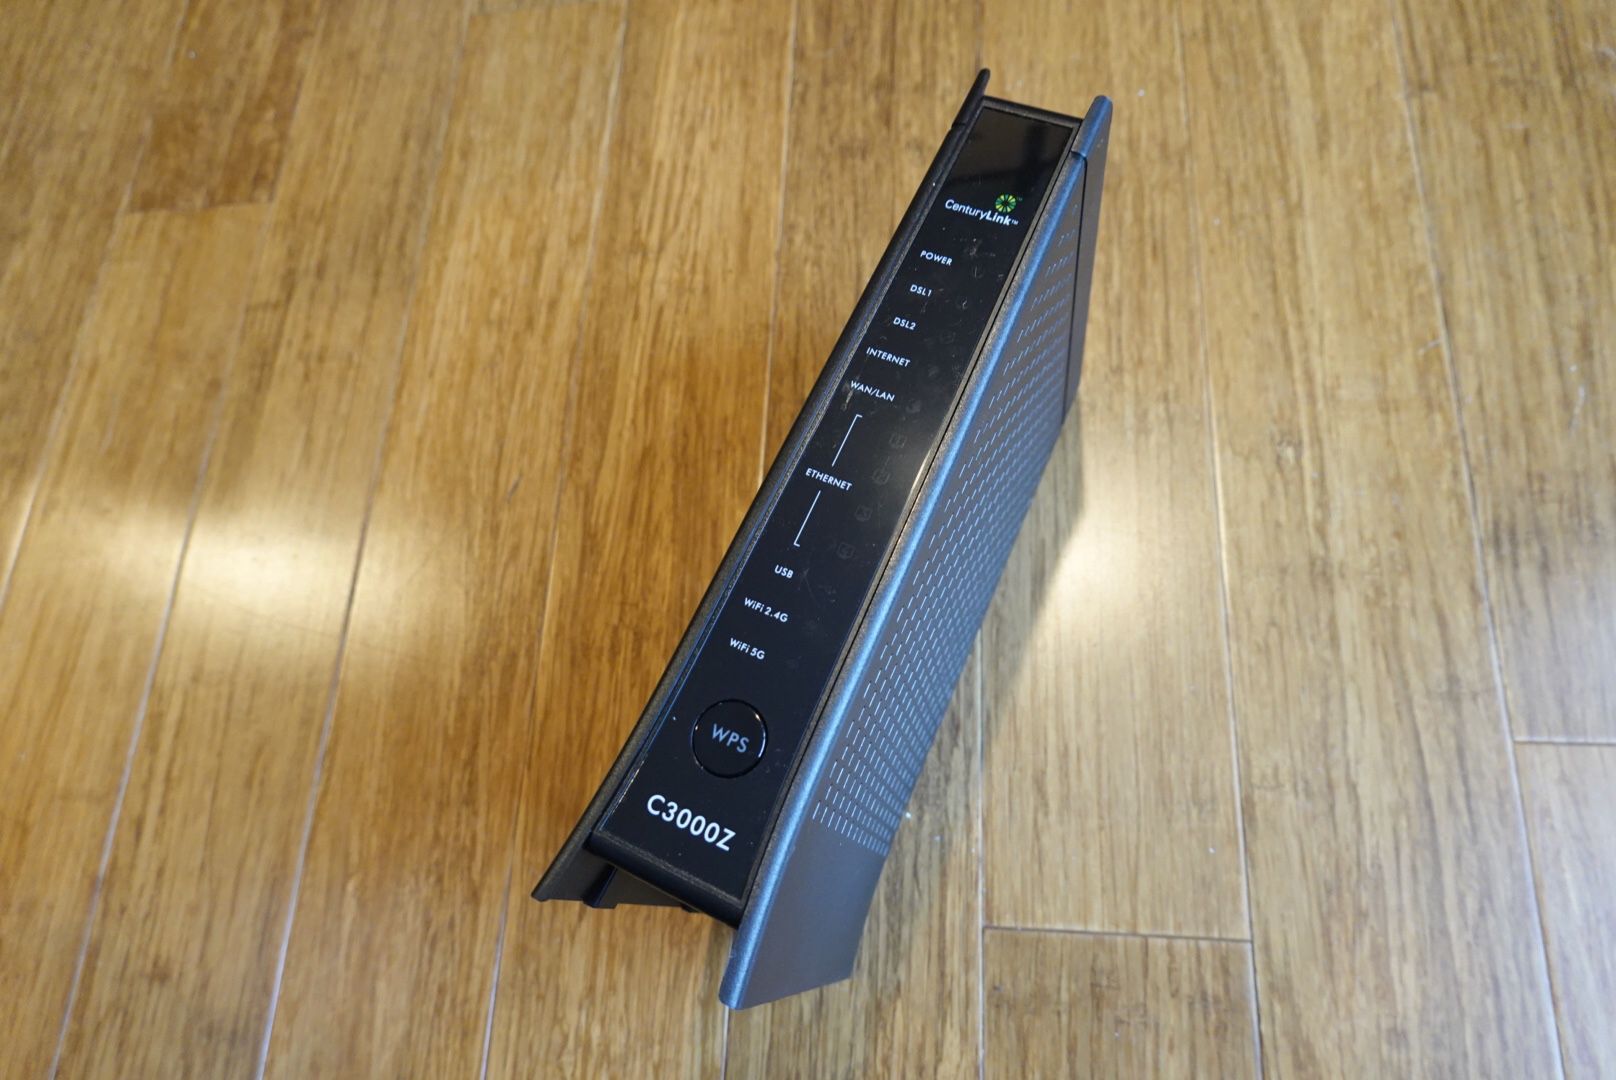 Centurylink ZyXEL C3000Z wireless modem router